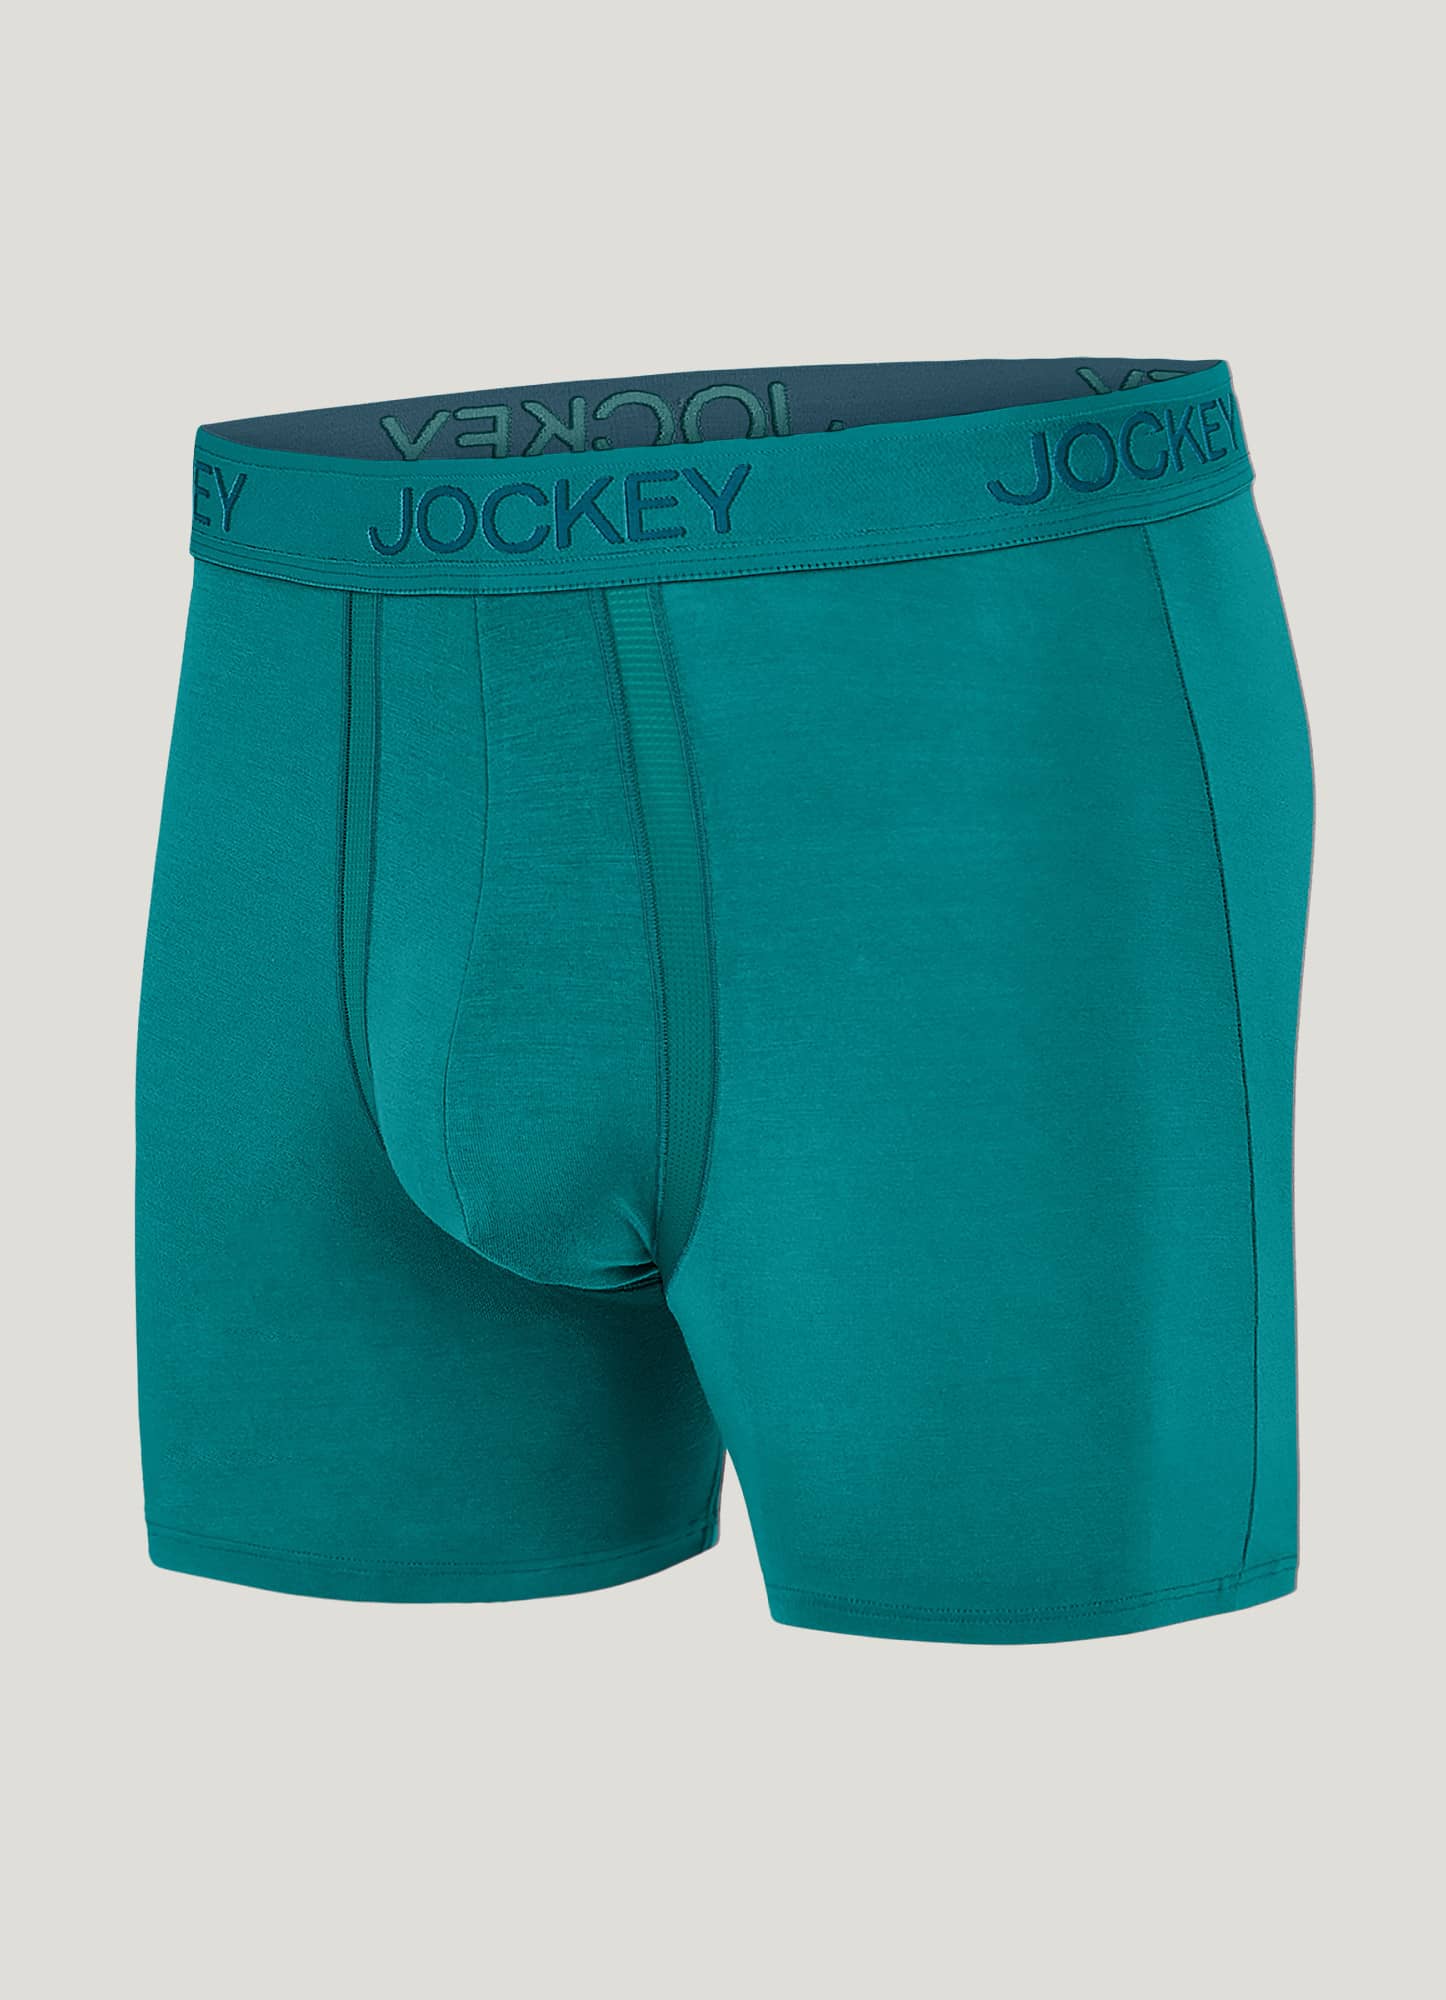 New Balance Men's Modal 6 Inseam Boxer Brief Underwear